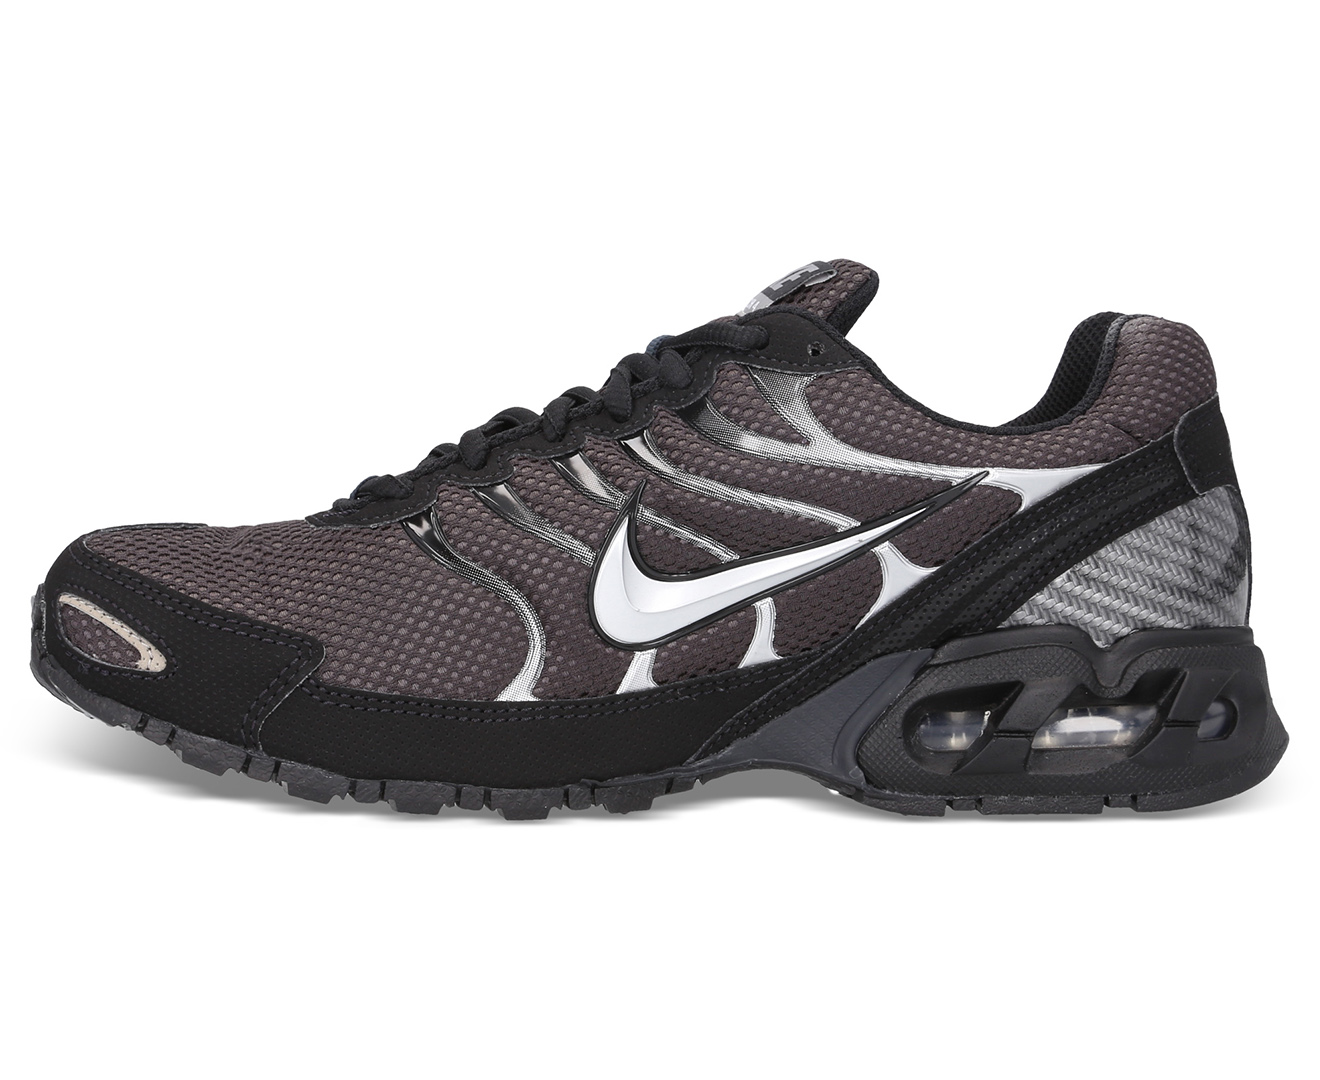 Nike Mens Air Max Torch 4 Running Shoes Blackwhite Nz